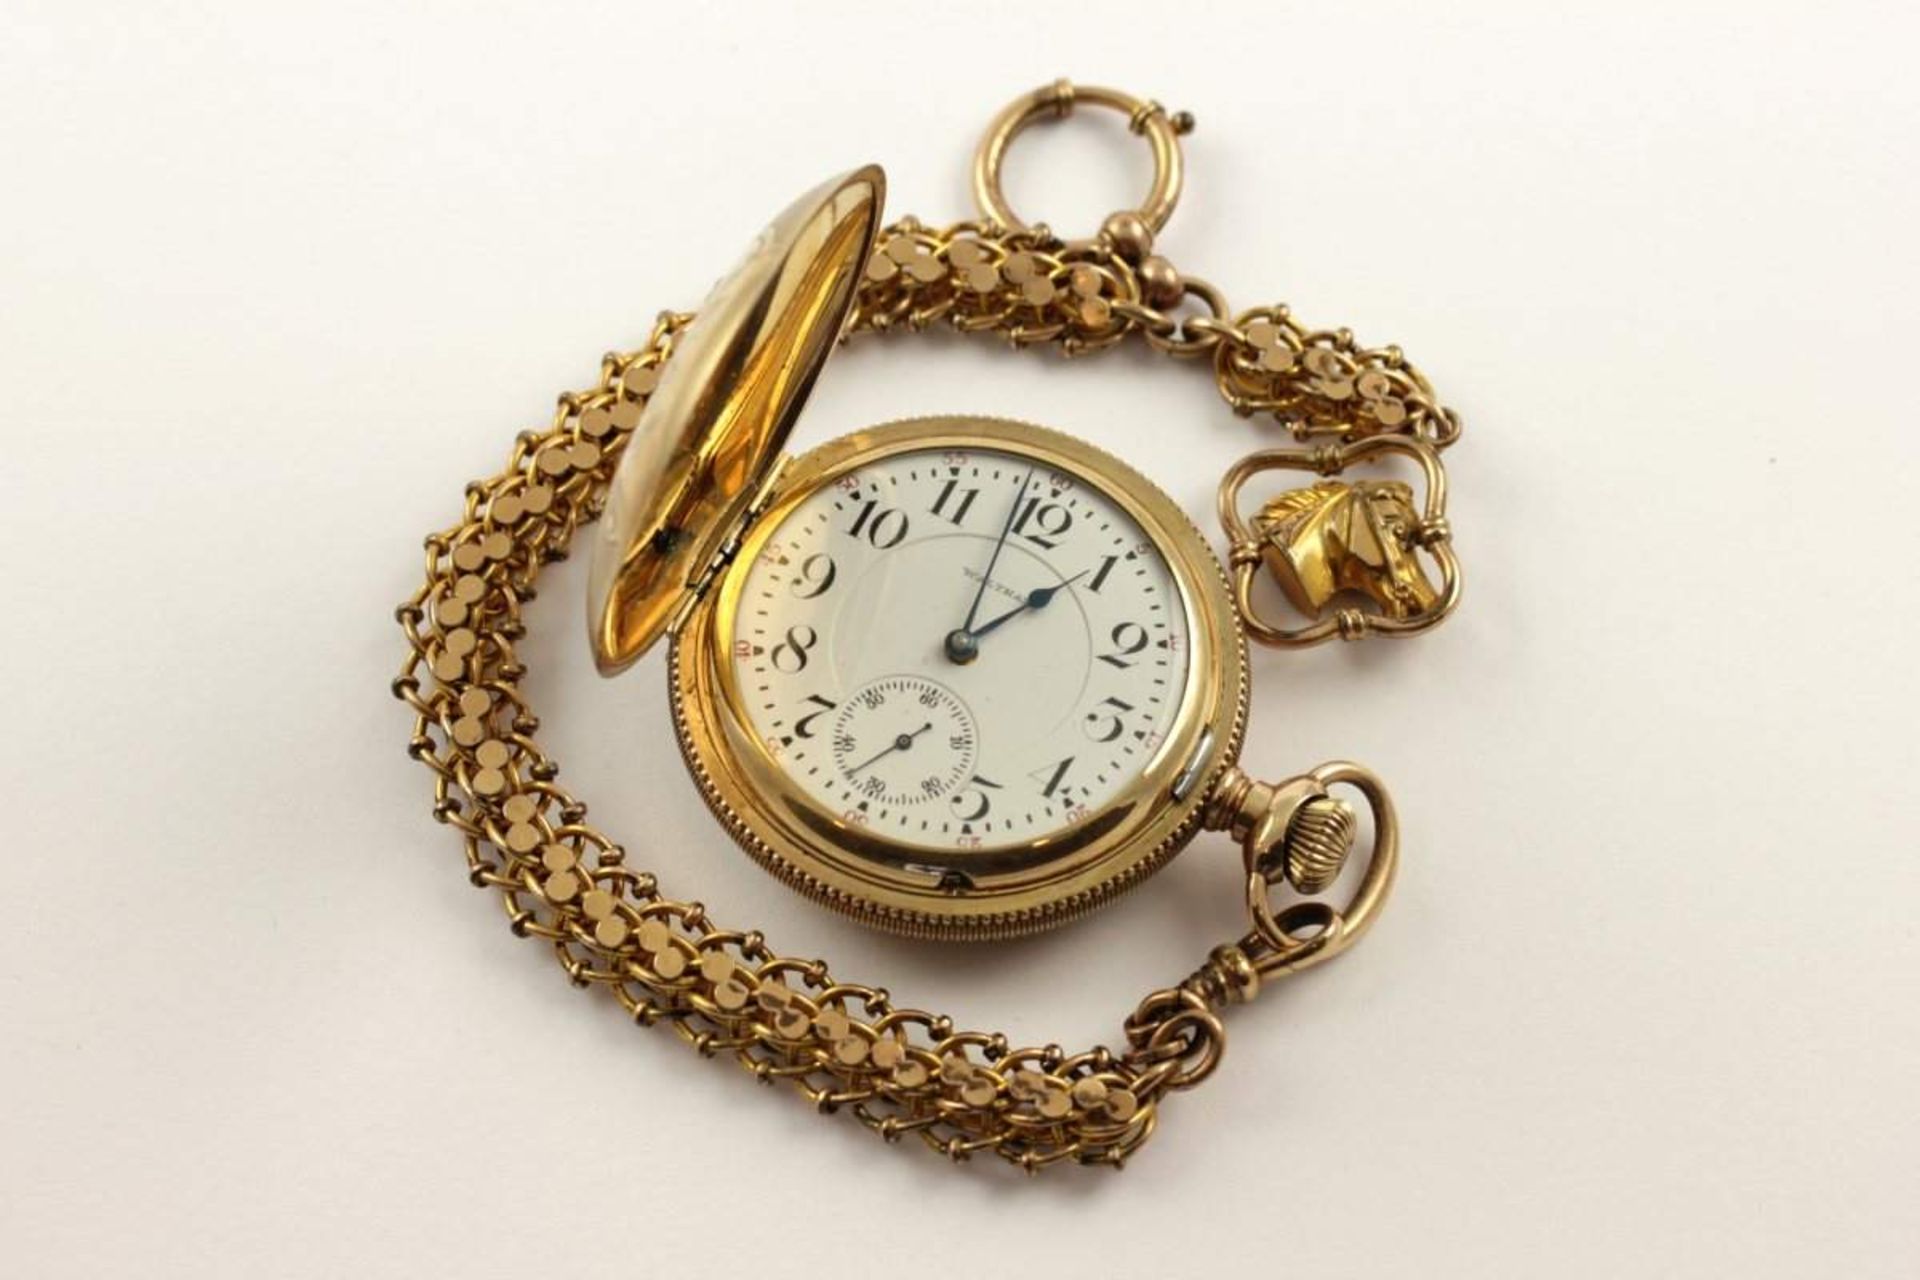 HERRENTASCHENUHR, vergoldet, Savonette, Marke: WALTHAM, mit Uhrenkette, Dm 5,3, gangbar, um 1900